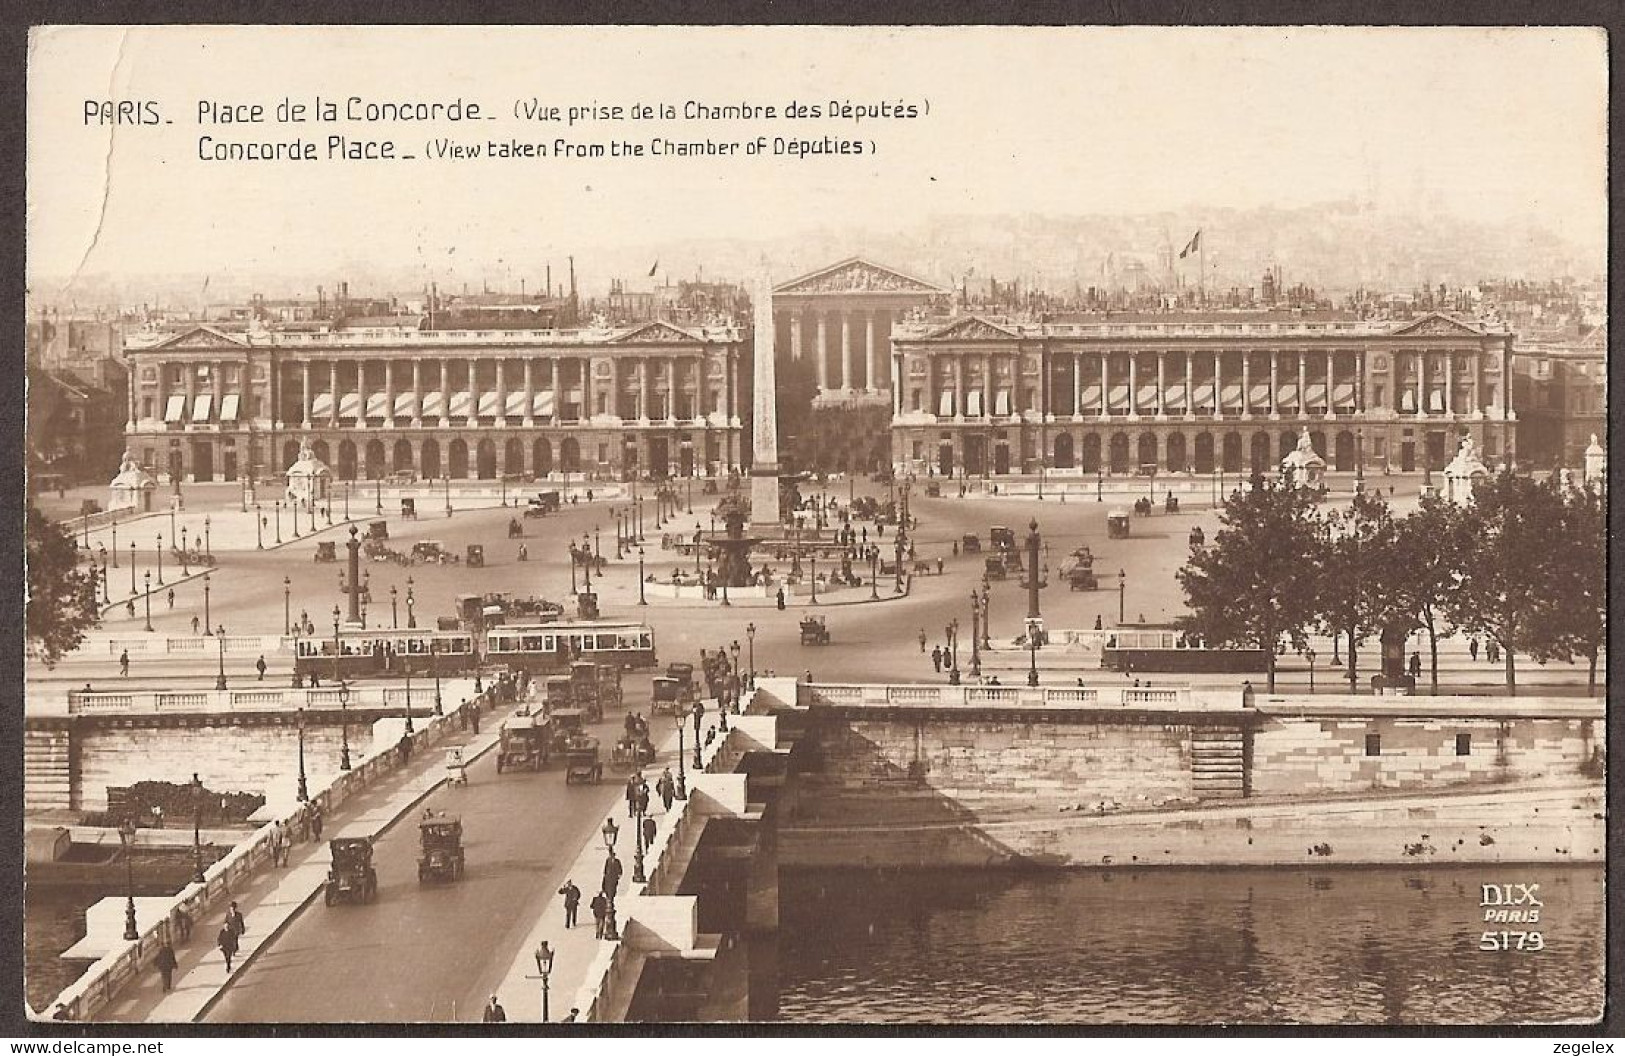 Paris 1922 - Place De La Concorde  Avec Des Trams - Strassenbahn - Animiert, Animé - Squares